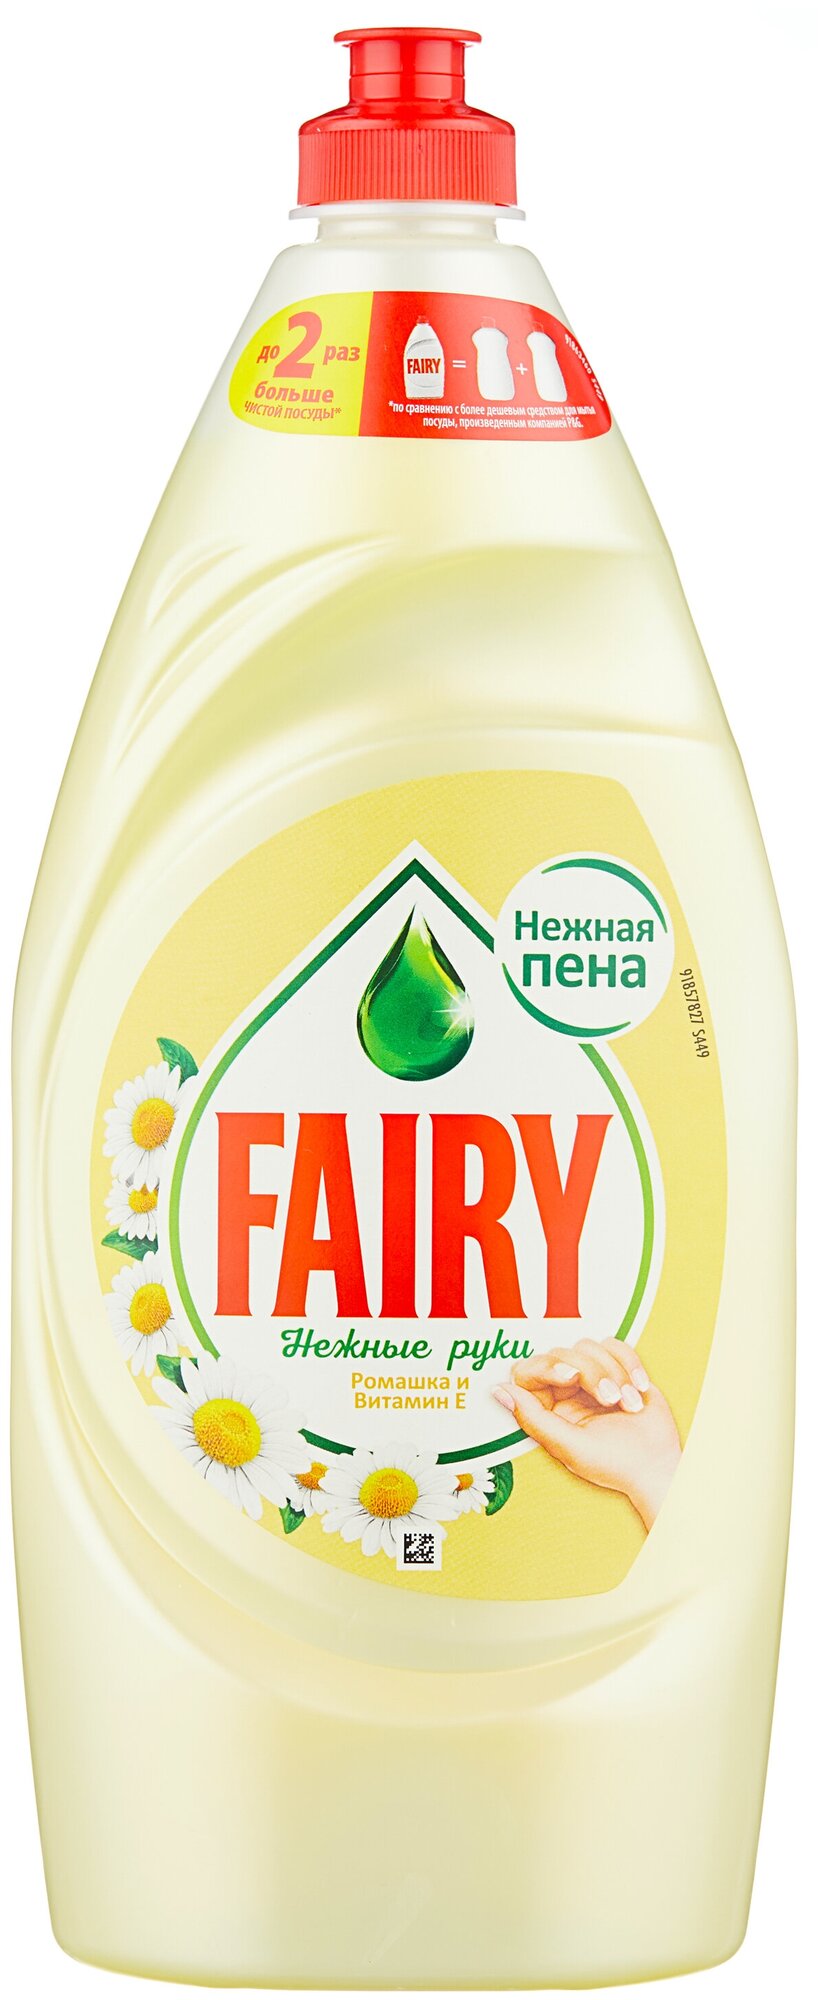 Fairy Средство для мытья посуды Fairy "Ромашка и витамин Е", 900 мл